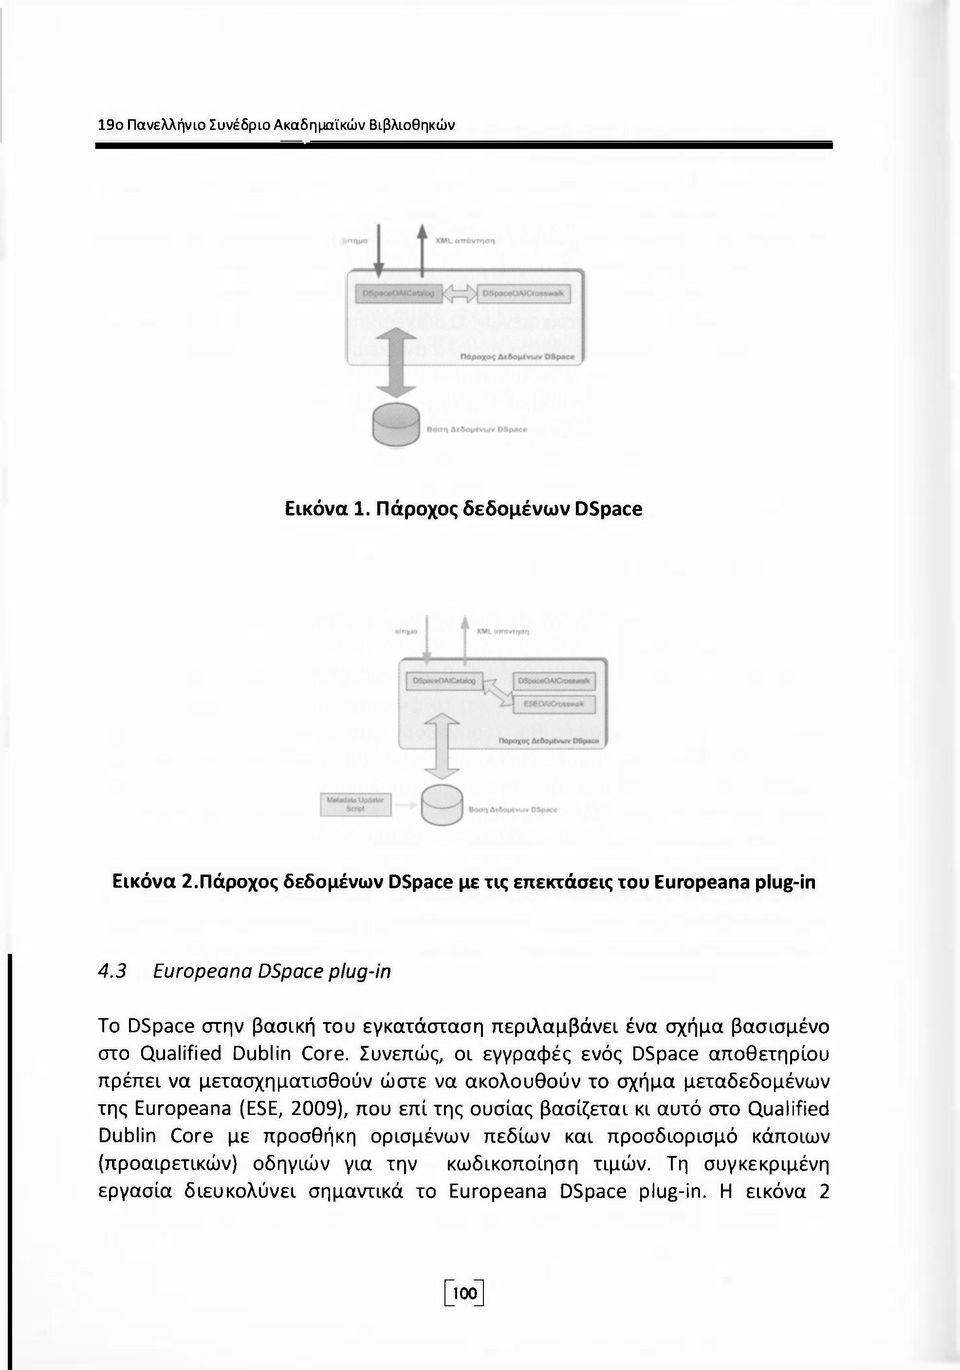 Συνεπώς, οι εγγραφές ενός DSpace αποθετηρίου πρέπει να μετασχηματισθούν ώστε να ακολουθούν το σχήμα μεταδεδομένων της Europeana (ESE, 2009), που επί της ουσίας βασίζεται